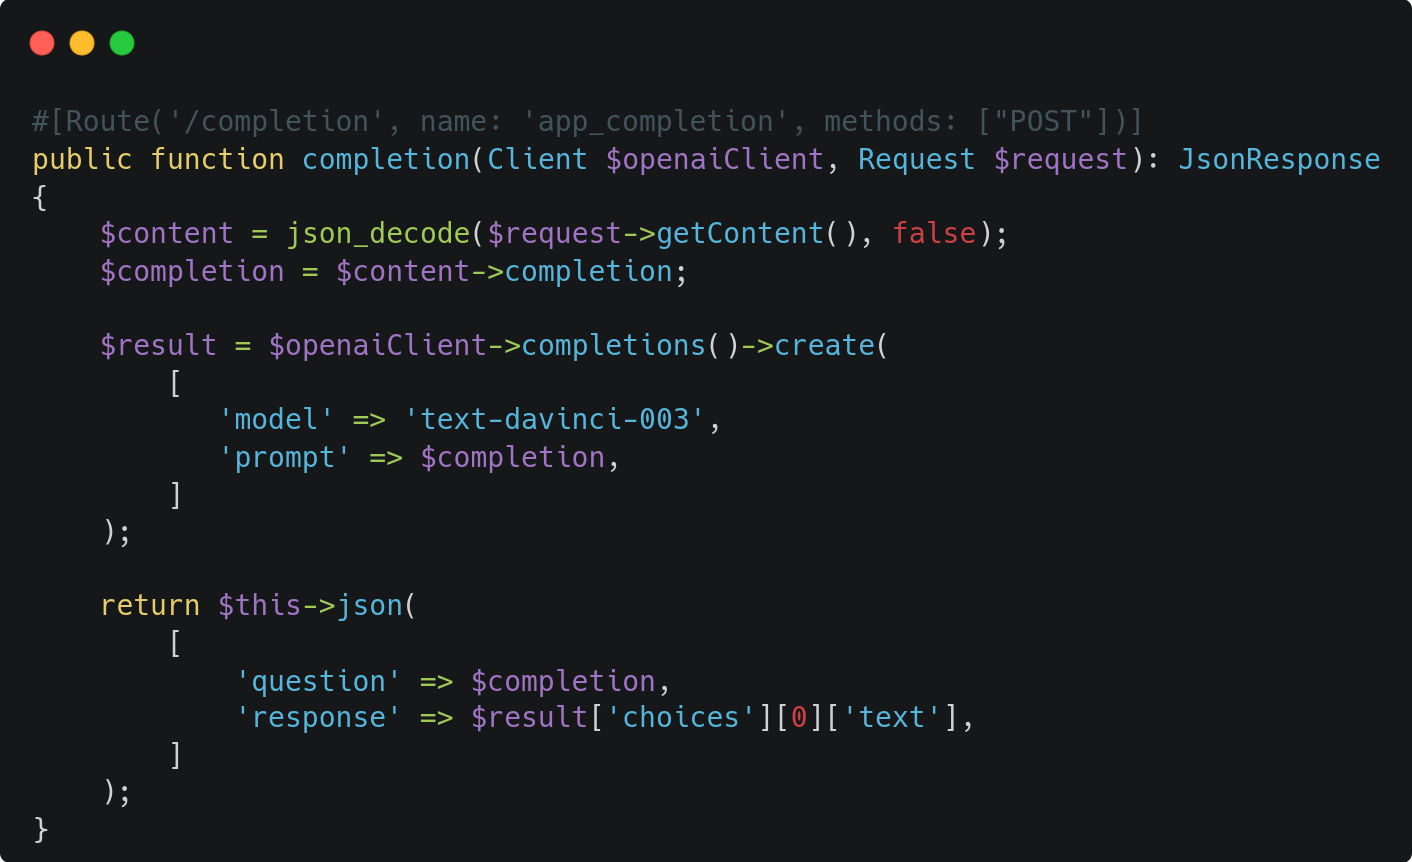 #[Route('/completion', name: 'app_completion', methods: ["POST"])]  public function completion(Client $openaiClient, Request $request): JsonResponse  {      $content = json_decode($request->getContent(), false);      $completion = $content->completion;        $result = $openaiClient->completions()->create(          [             'model' => 'text-davinci-003',             'prompt' => $completion,          ]      );        return $this->json(          [              'question' => $completion,              'response' => $result['choices'][0]['text'],          ]      );  } 